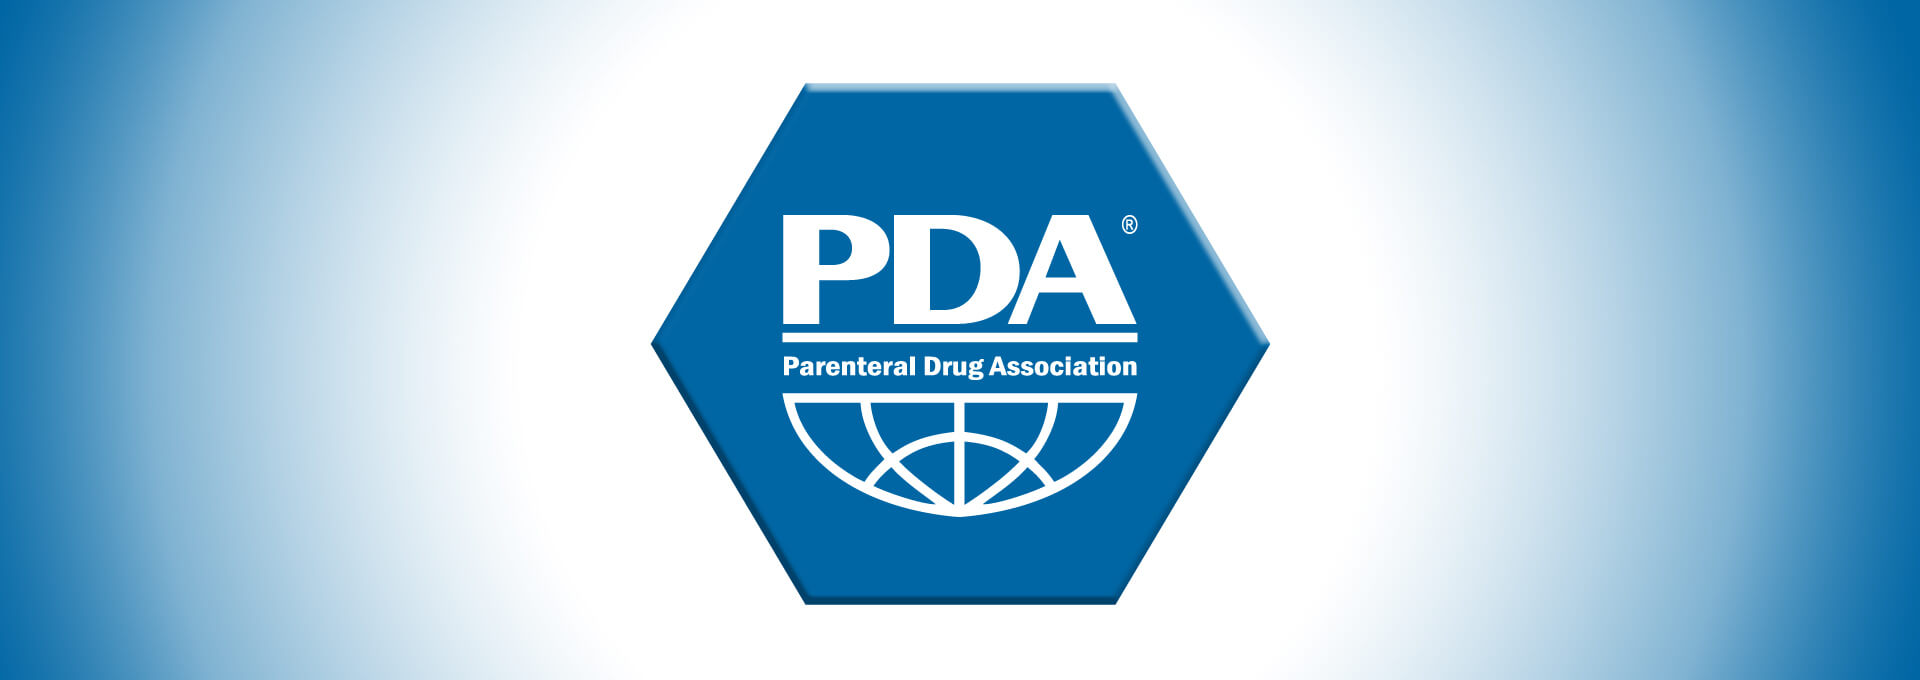 PDA董事会提名截止到5月10日